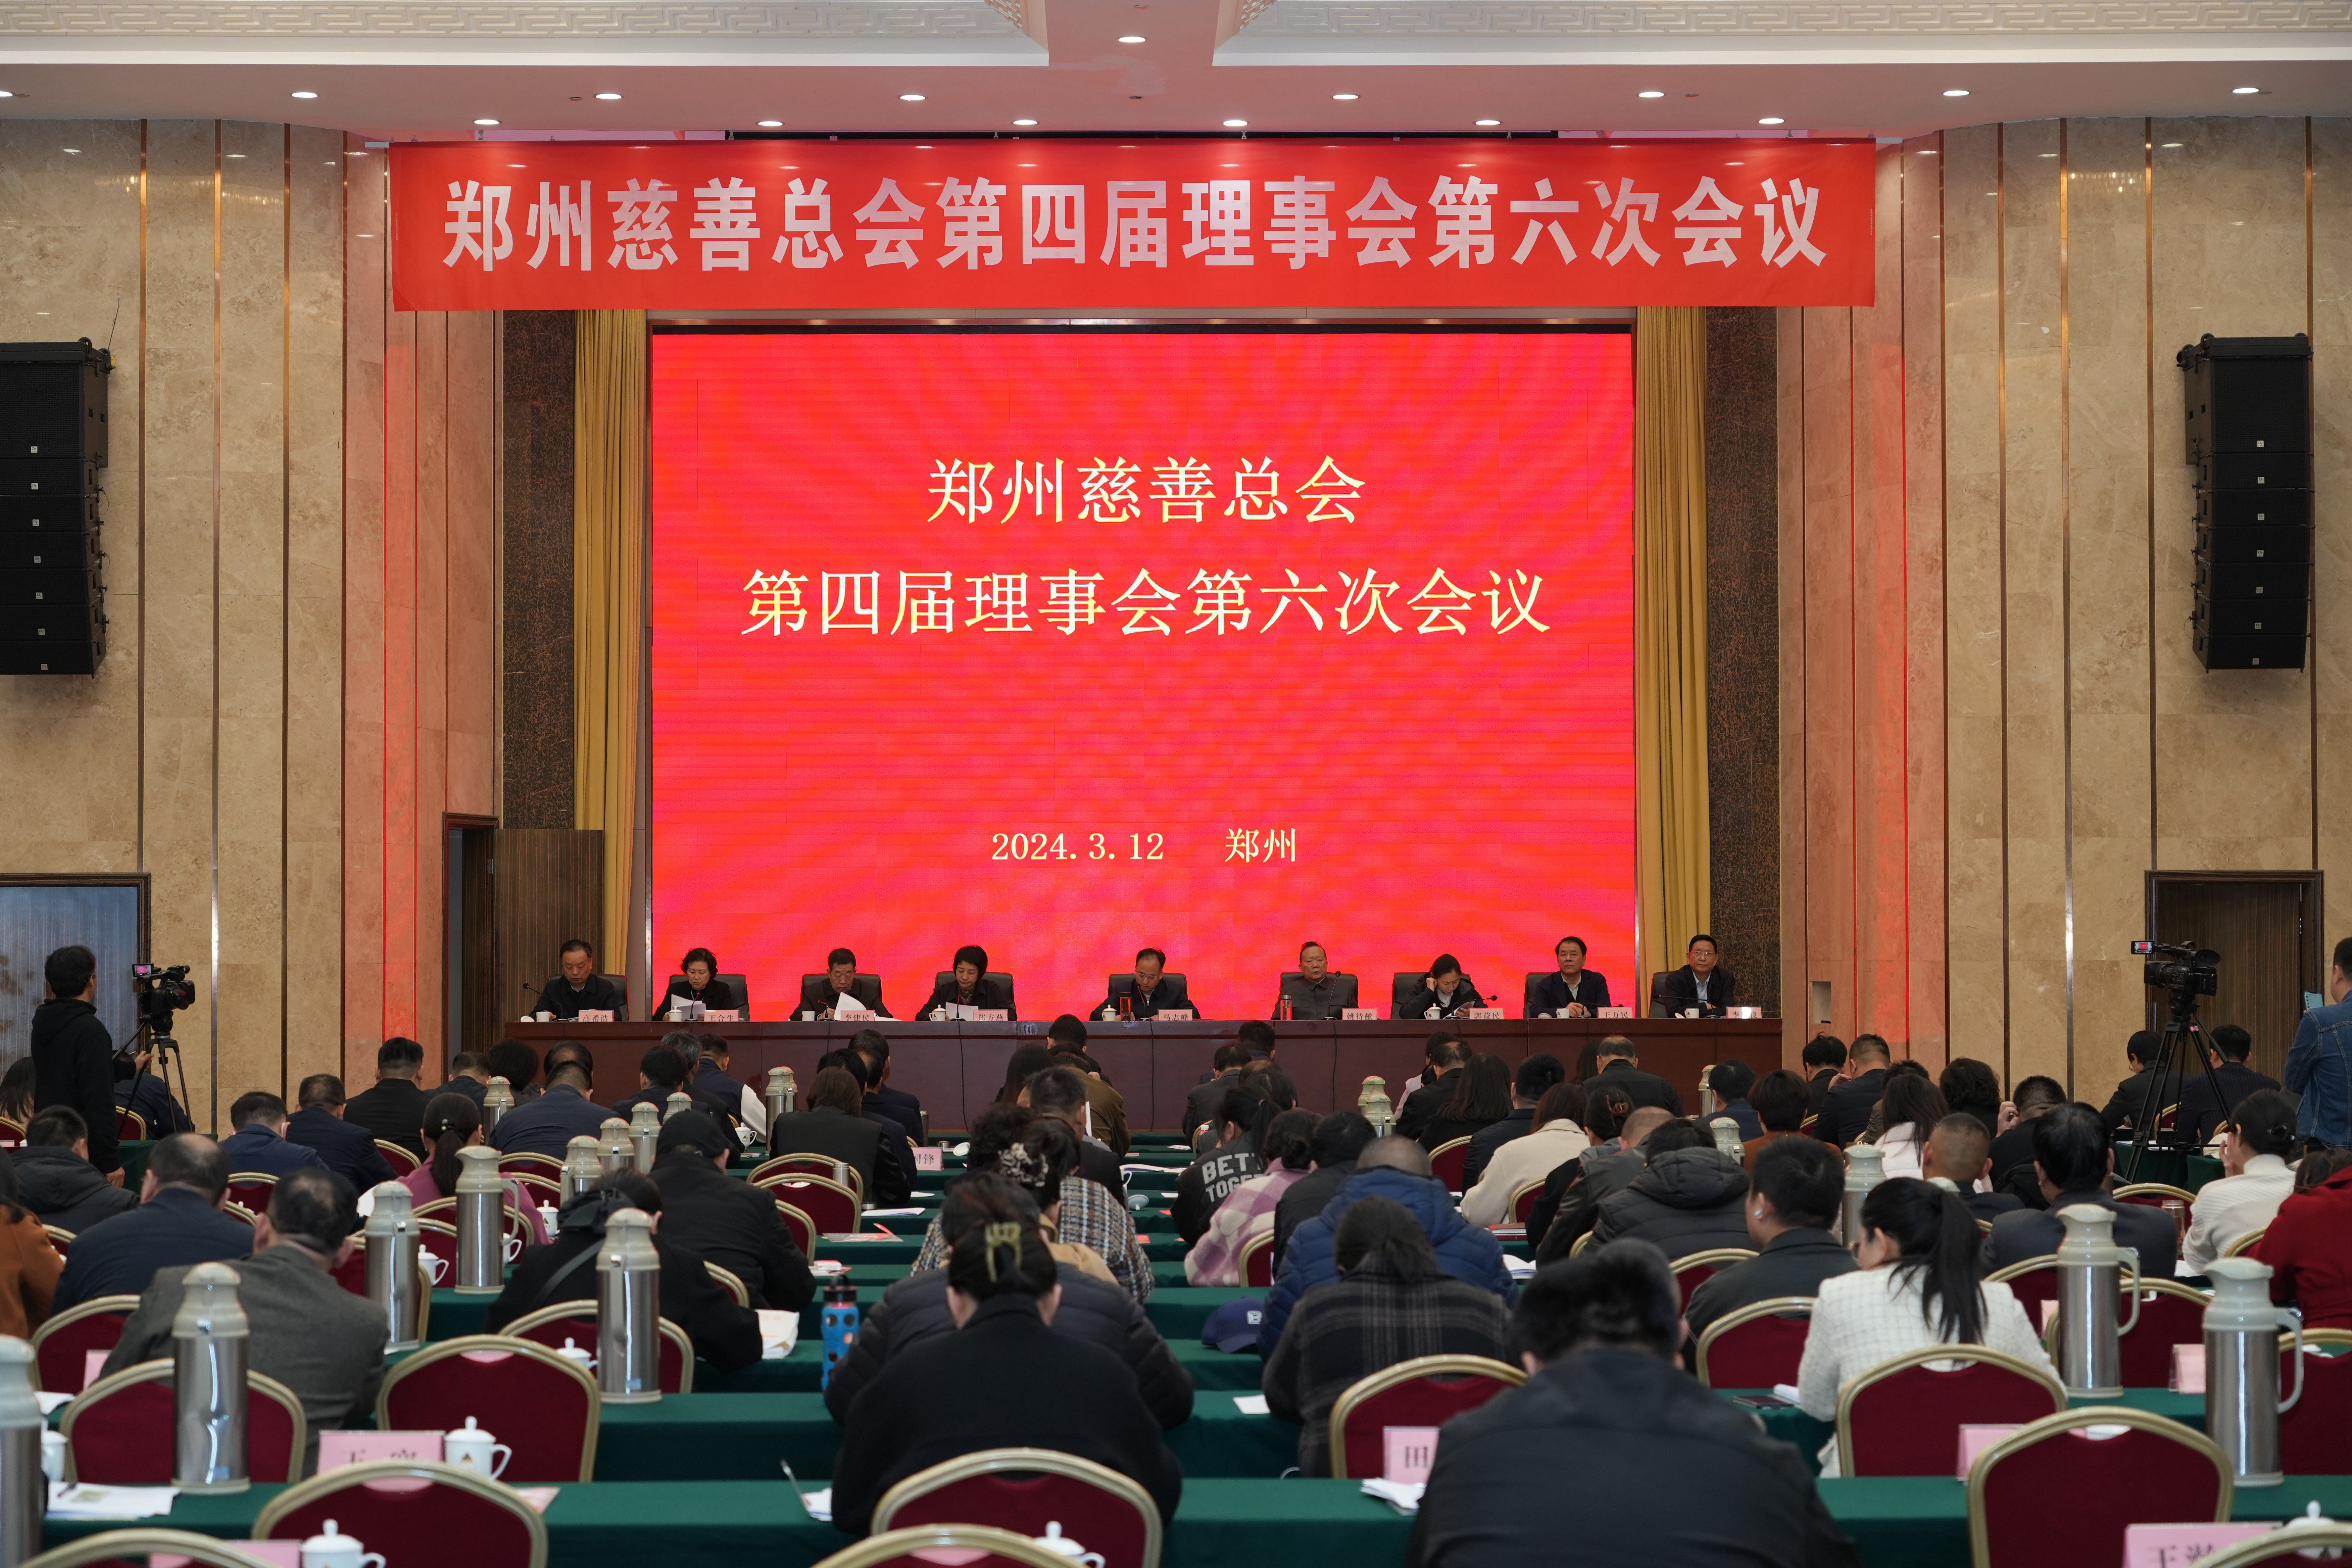 团结一心再进发 昂首阔步向未来——郑州慈善总会召开第四届理事会第六次会议